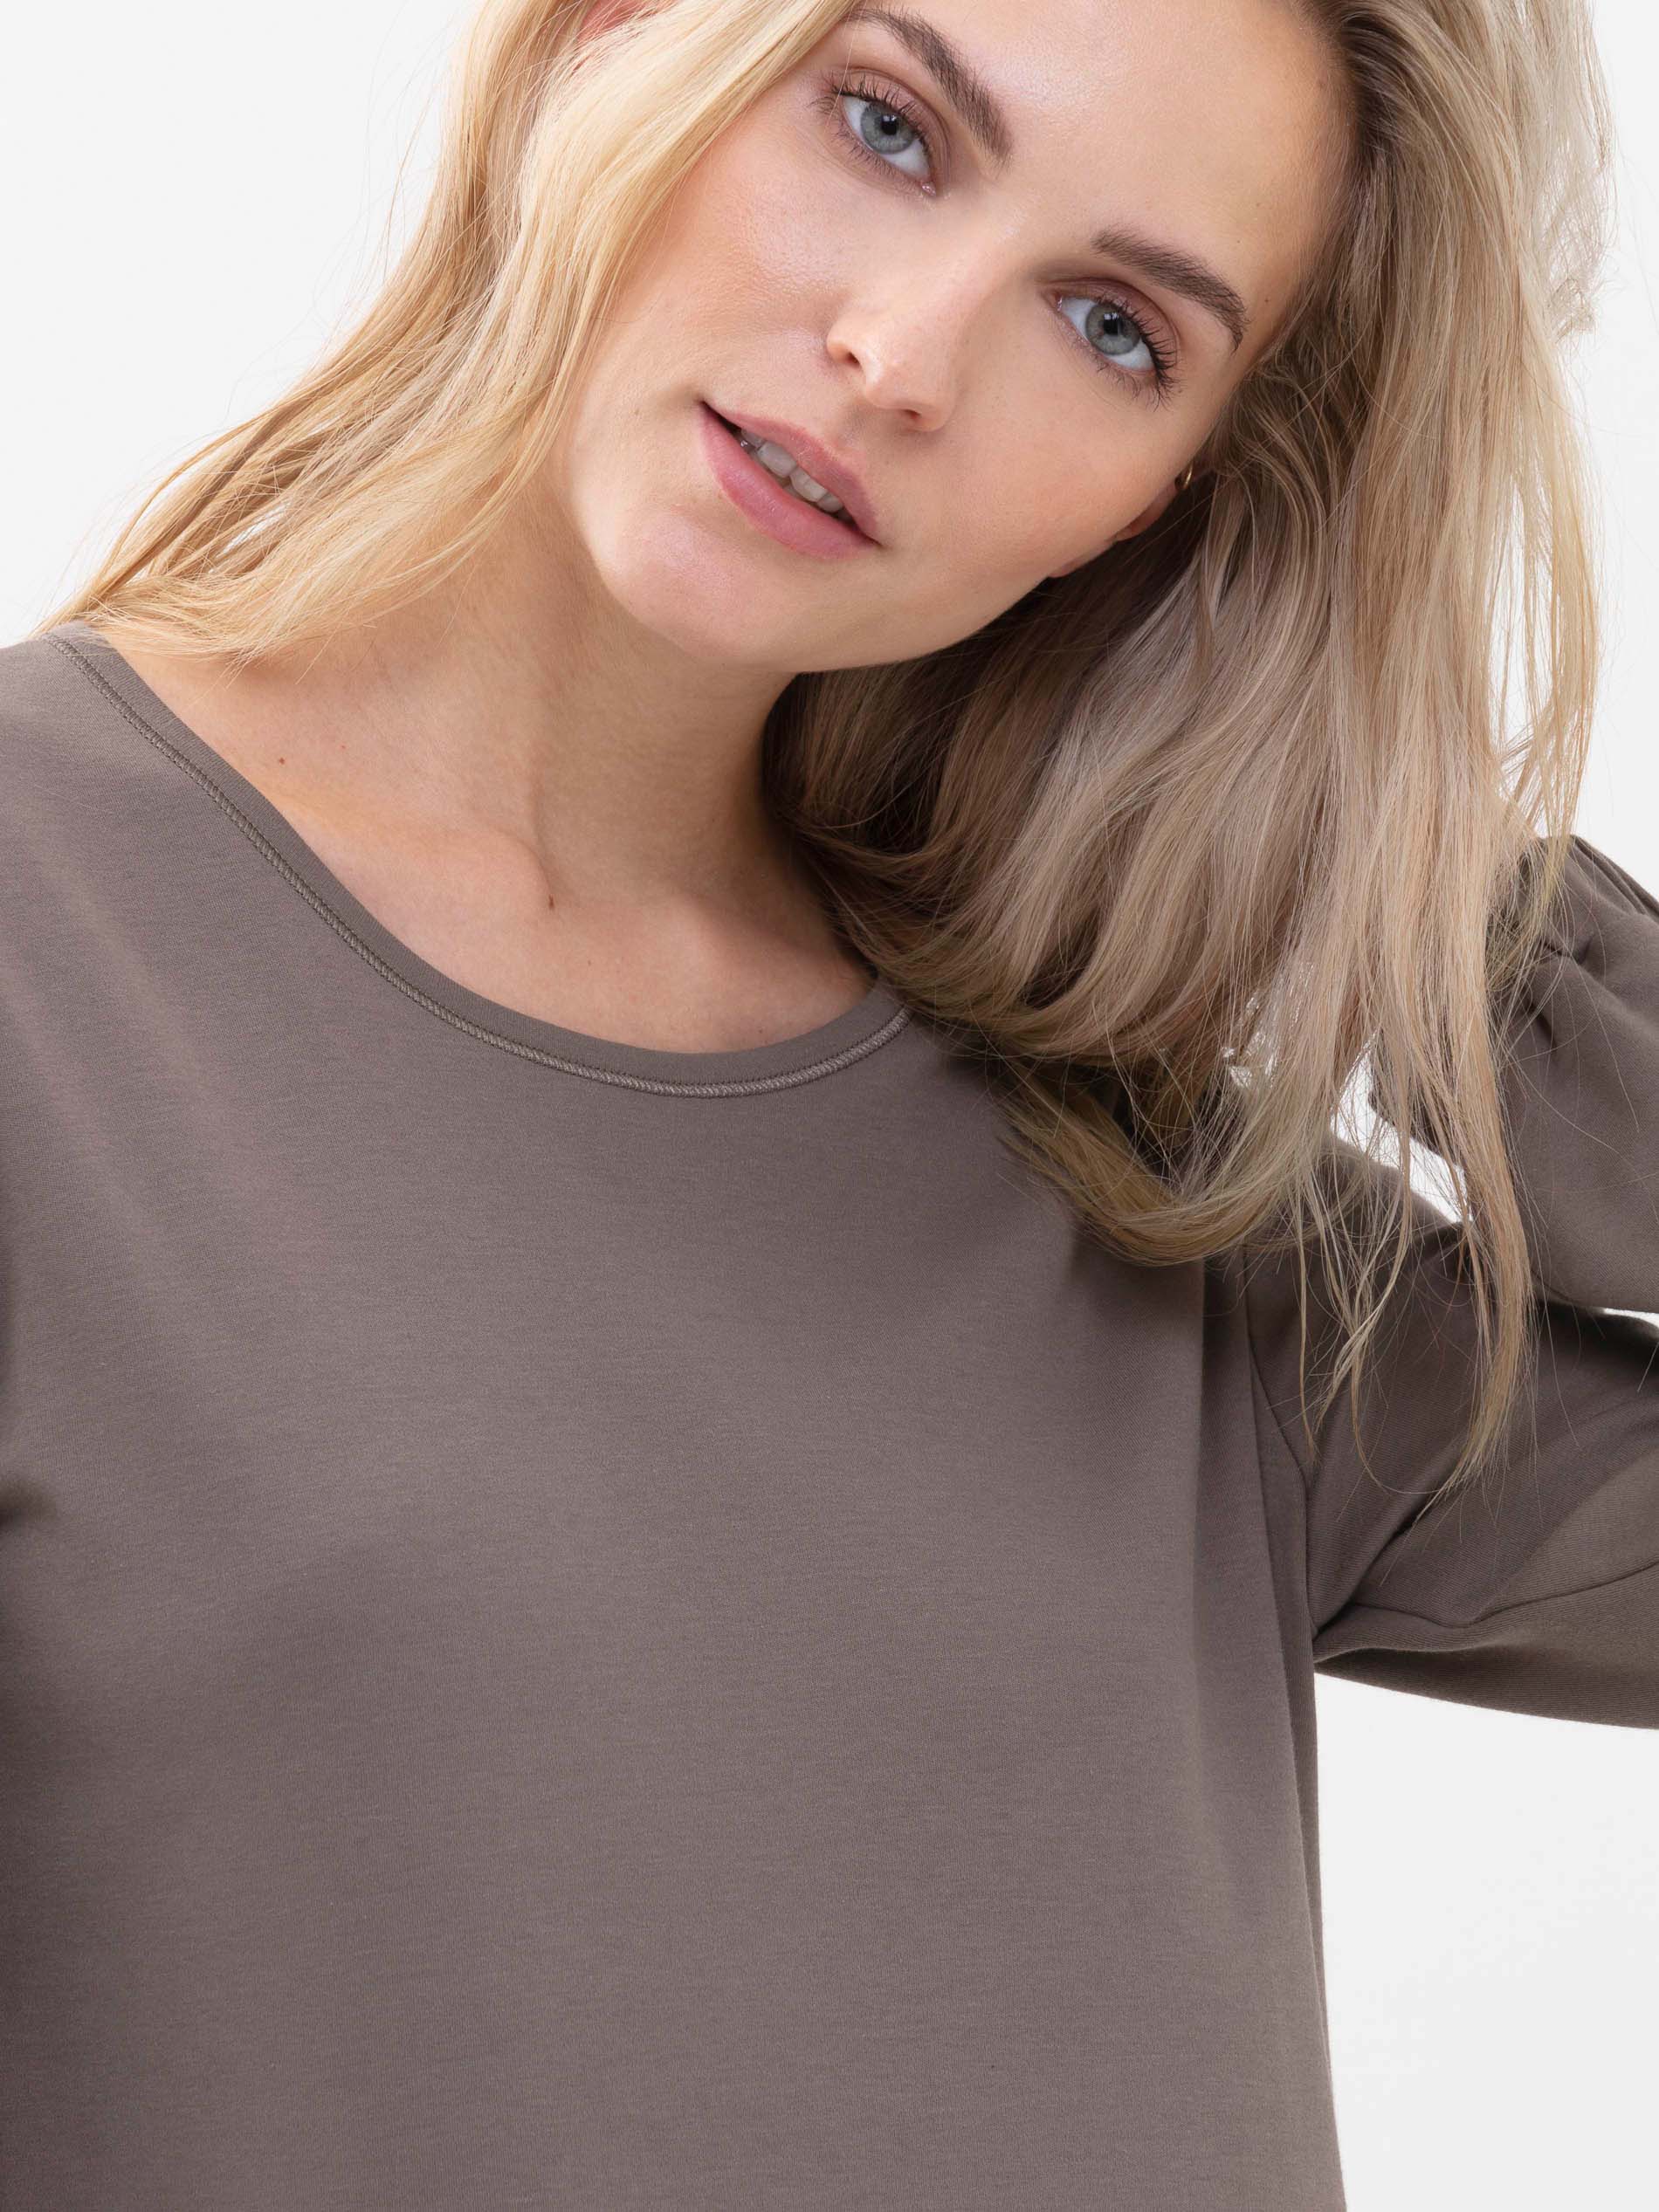 Vooraanzicht van een blond damesmodel, ze draagt een T-shirt met lange mouwen uit de serie Zzzleepwear in de kleur deep taupe | mey®